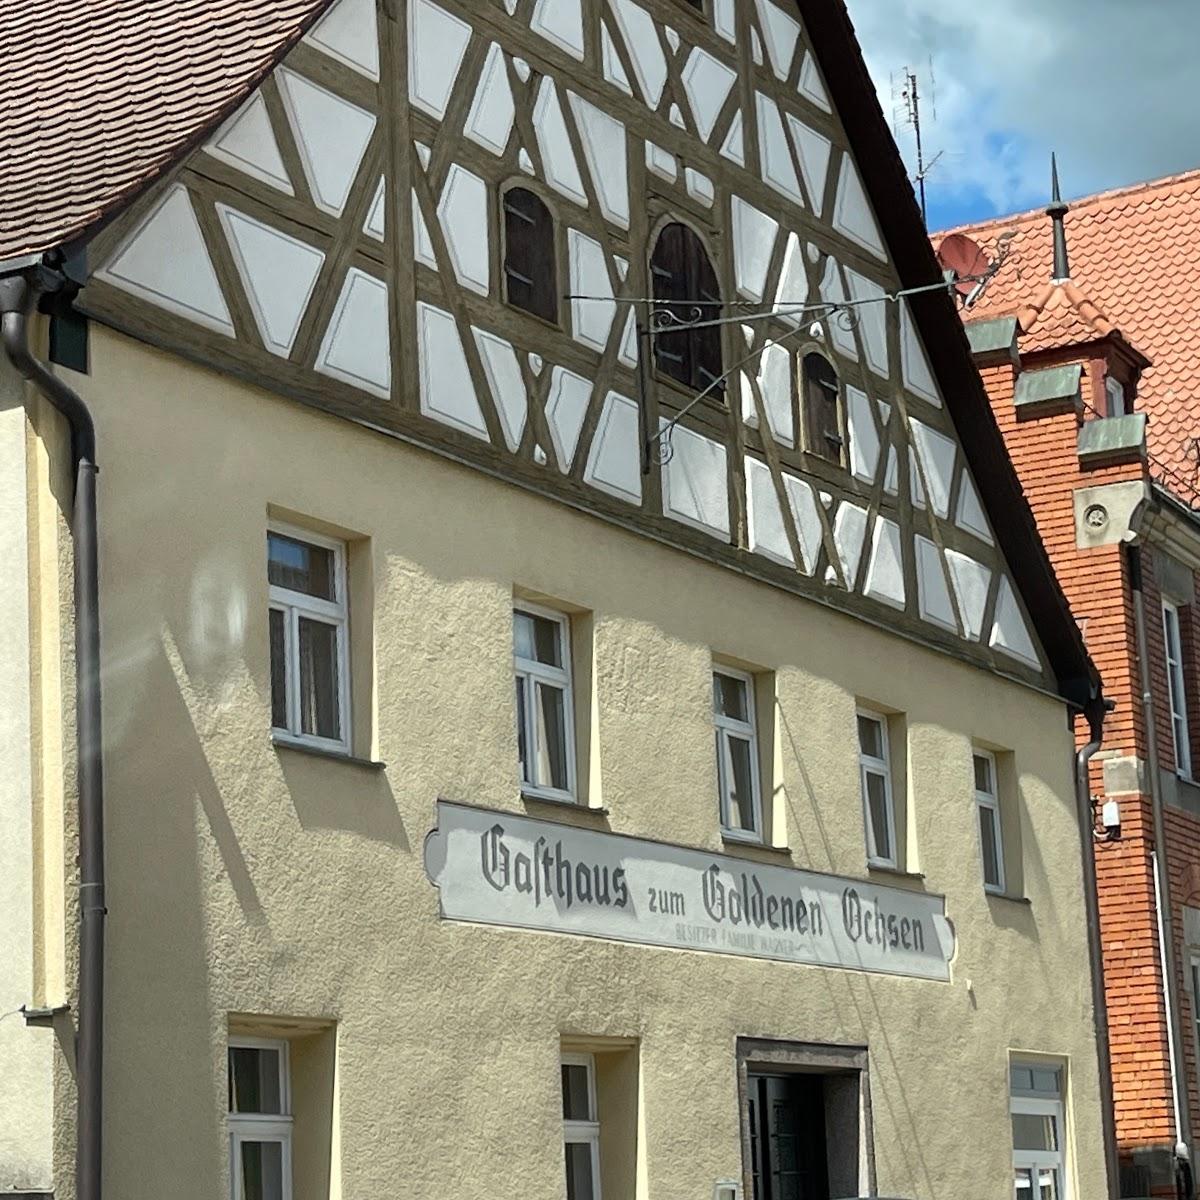 Restaurant "Zum Goldenen Ochsen" in Leinburg